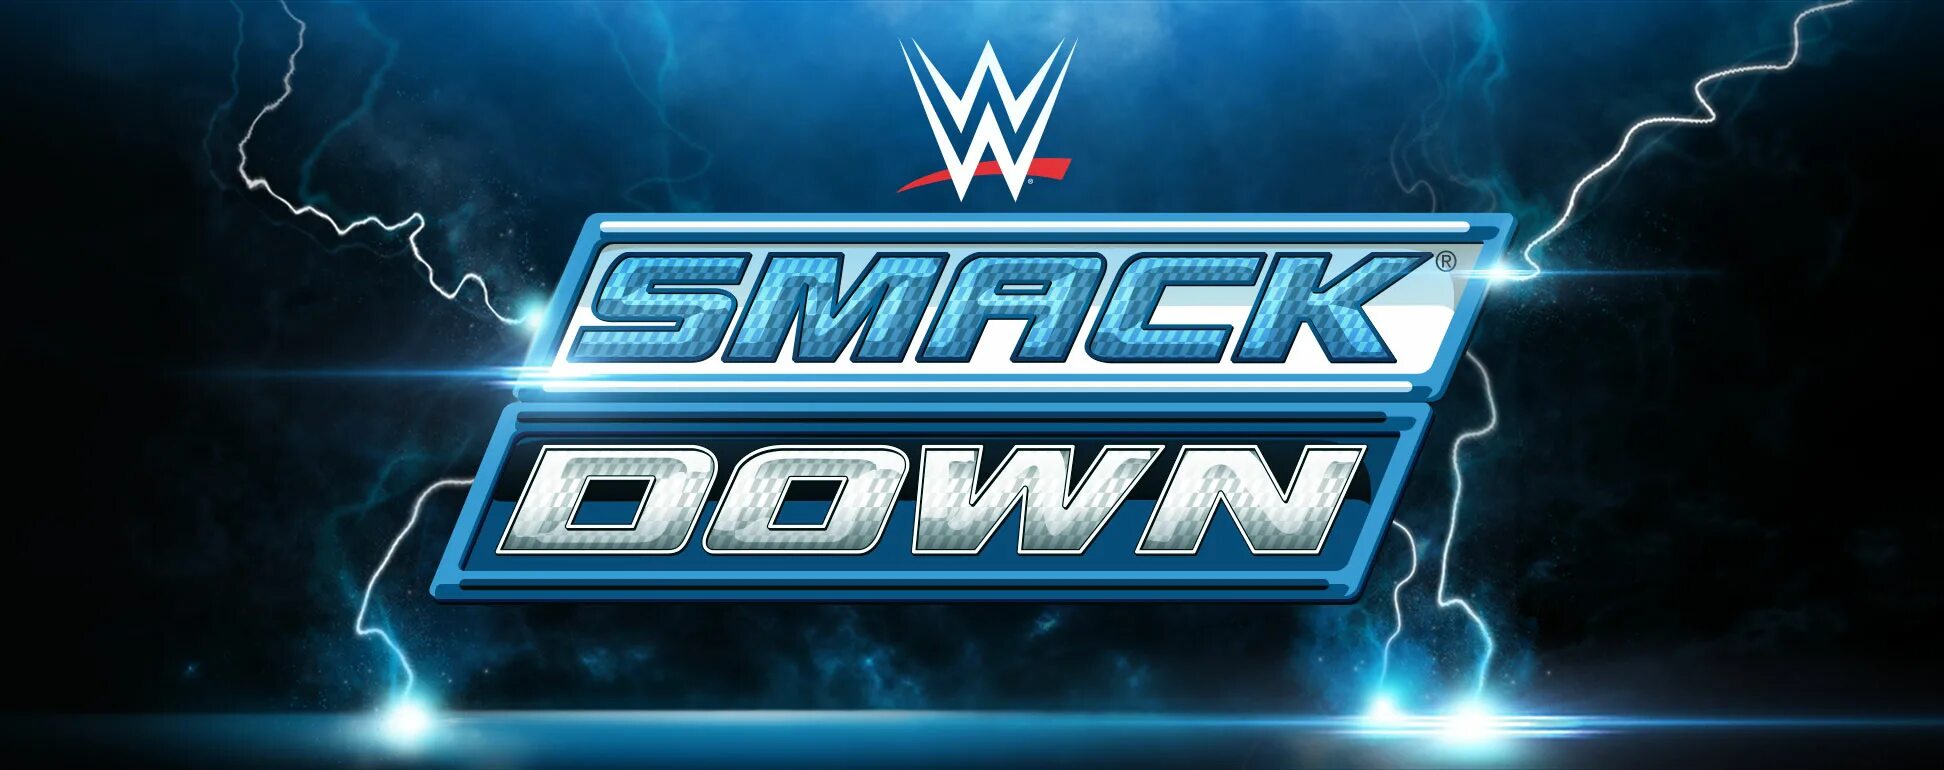 Smack down. WWE SMACKDOWN. SMACKDOWN WWE SMACKDOWN. WWE SMACKDOWN logo. Картинка SMACKDOWN.